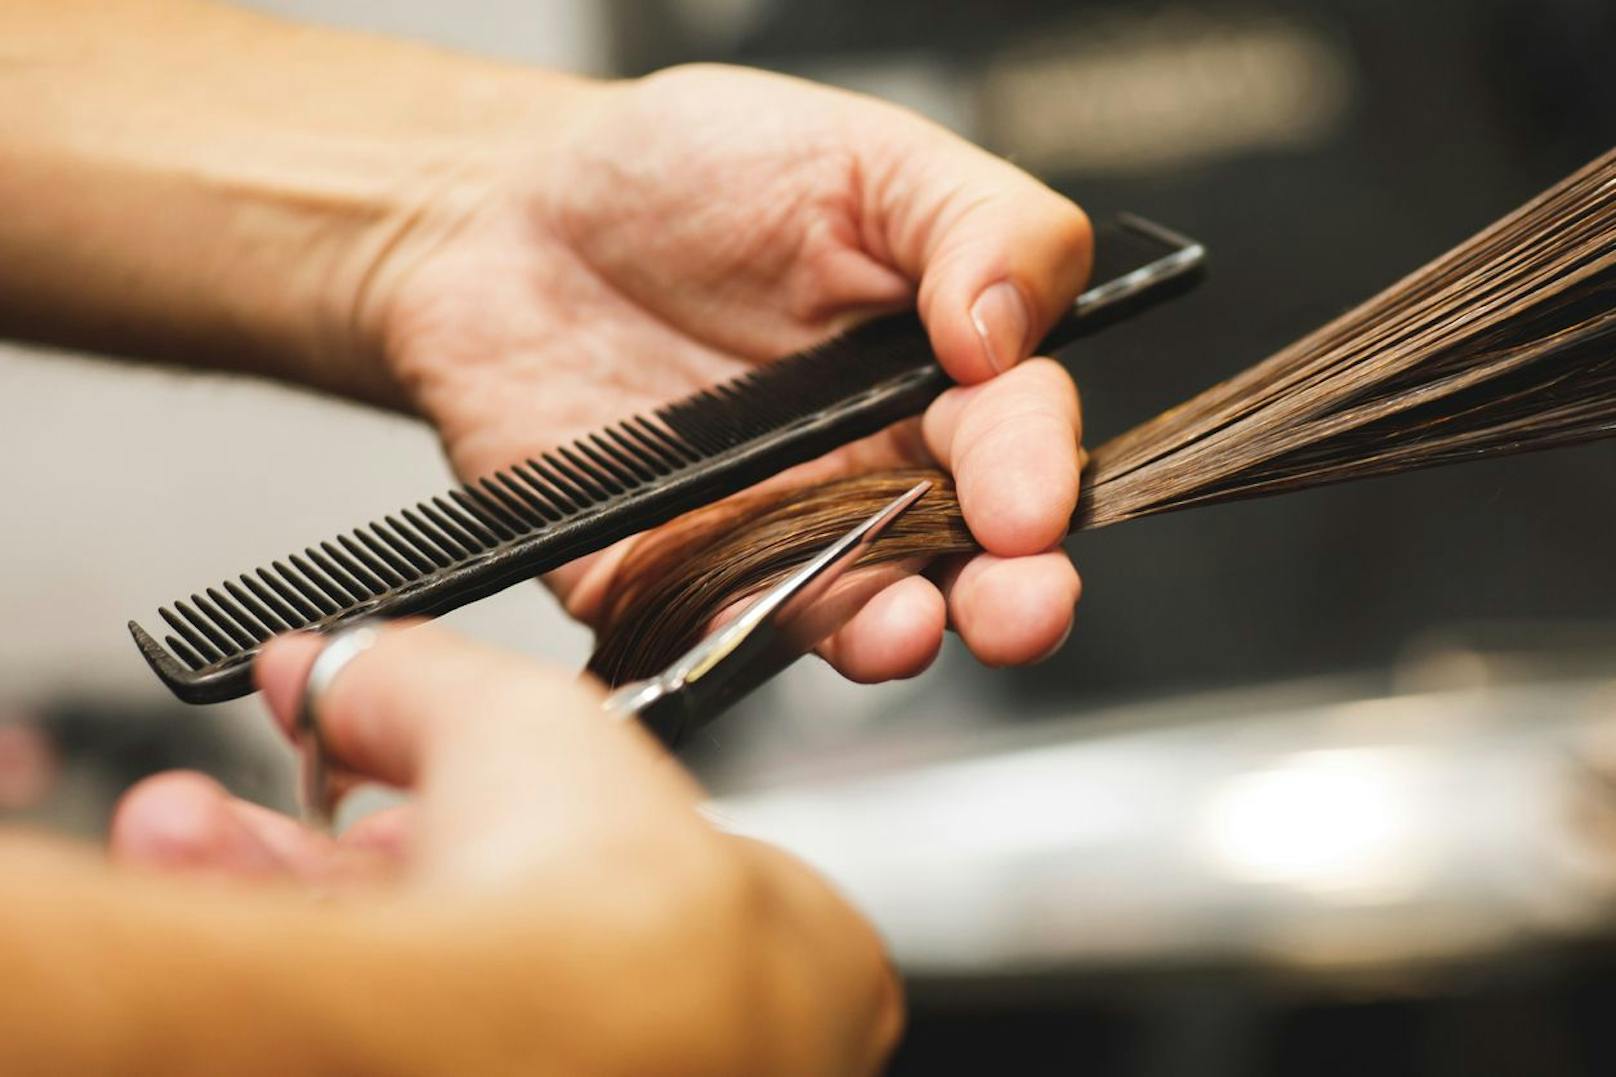 Wenn an deinen Haaren Spliss zu sehen ist, wird normalerweise so schnell wie möglich ein Friseur-Termin gebucht, um die Haarspitzen zu schneiden. Mit der "Hair-Dusting"-Methode musst du allerdings nicht auf Länge verzichten.